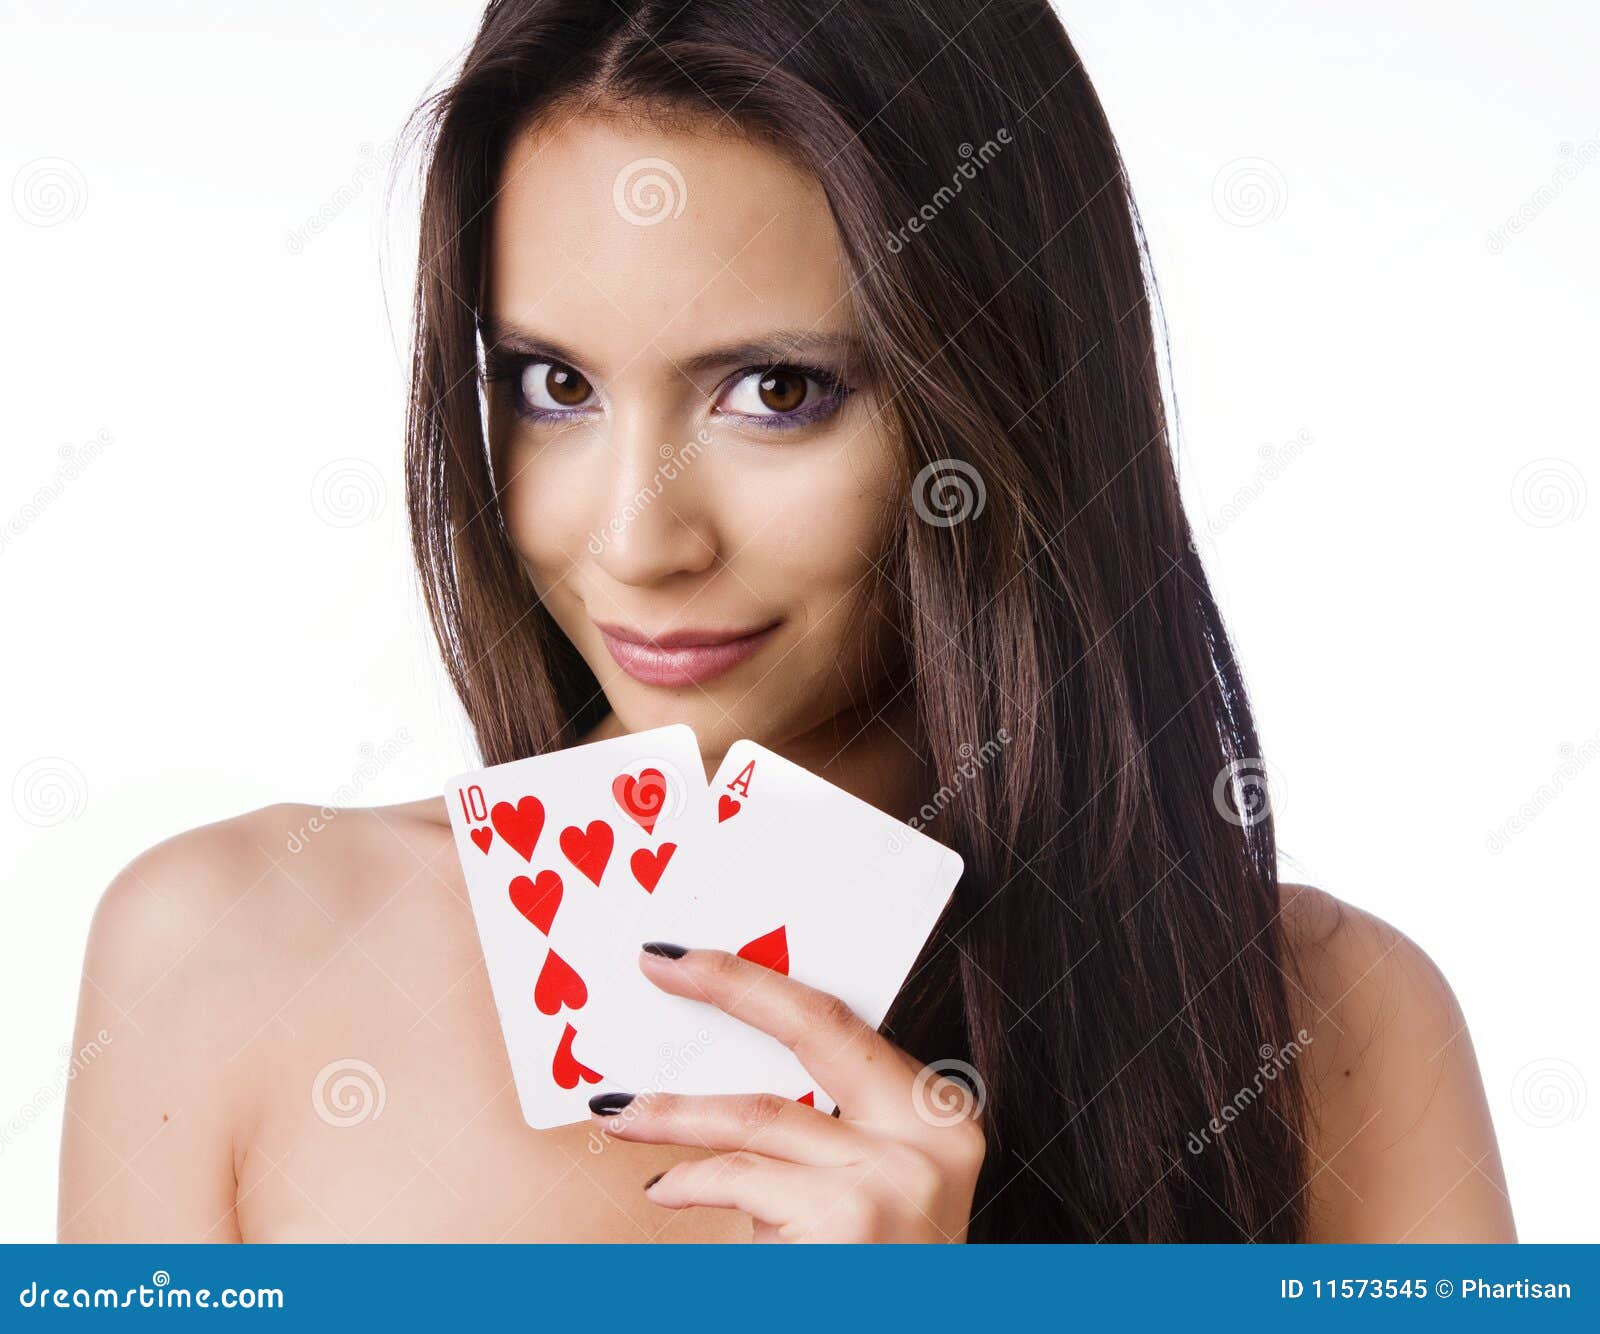 Красивая девушка карт. Девушка с картами. Красивая девушка с картами. Девушка с карточкой. Фотосессия с картами.